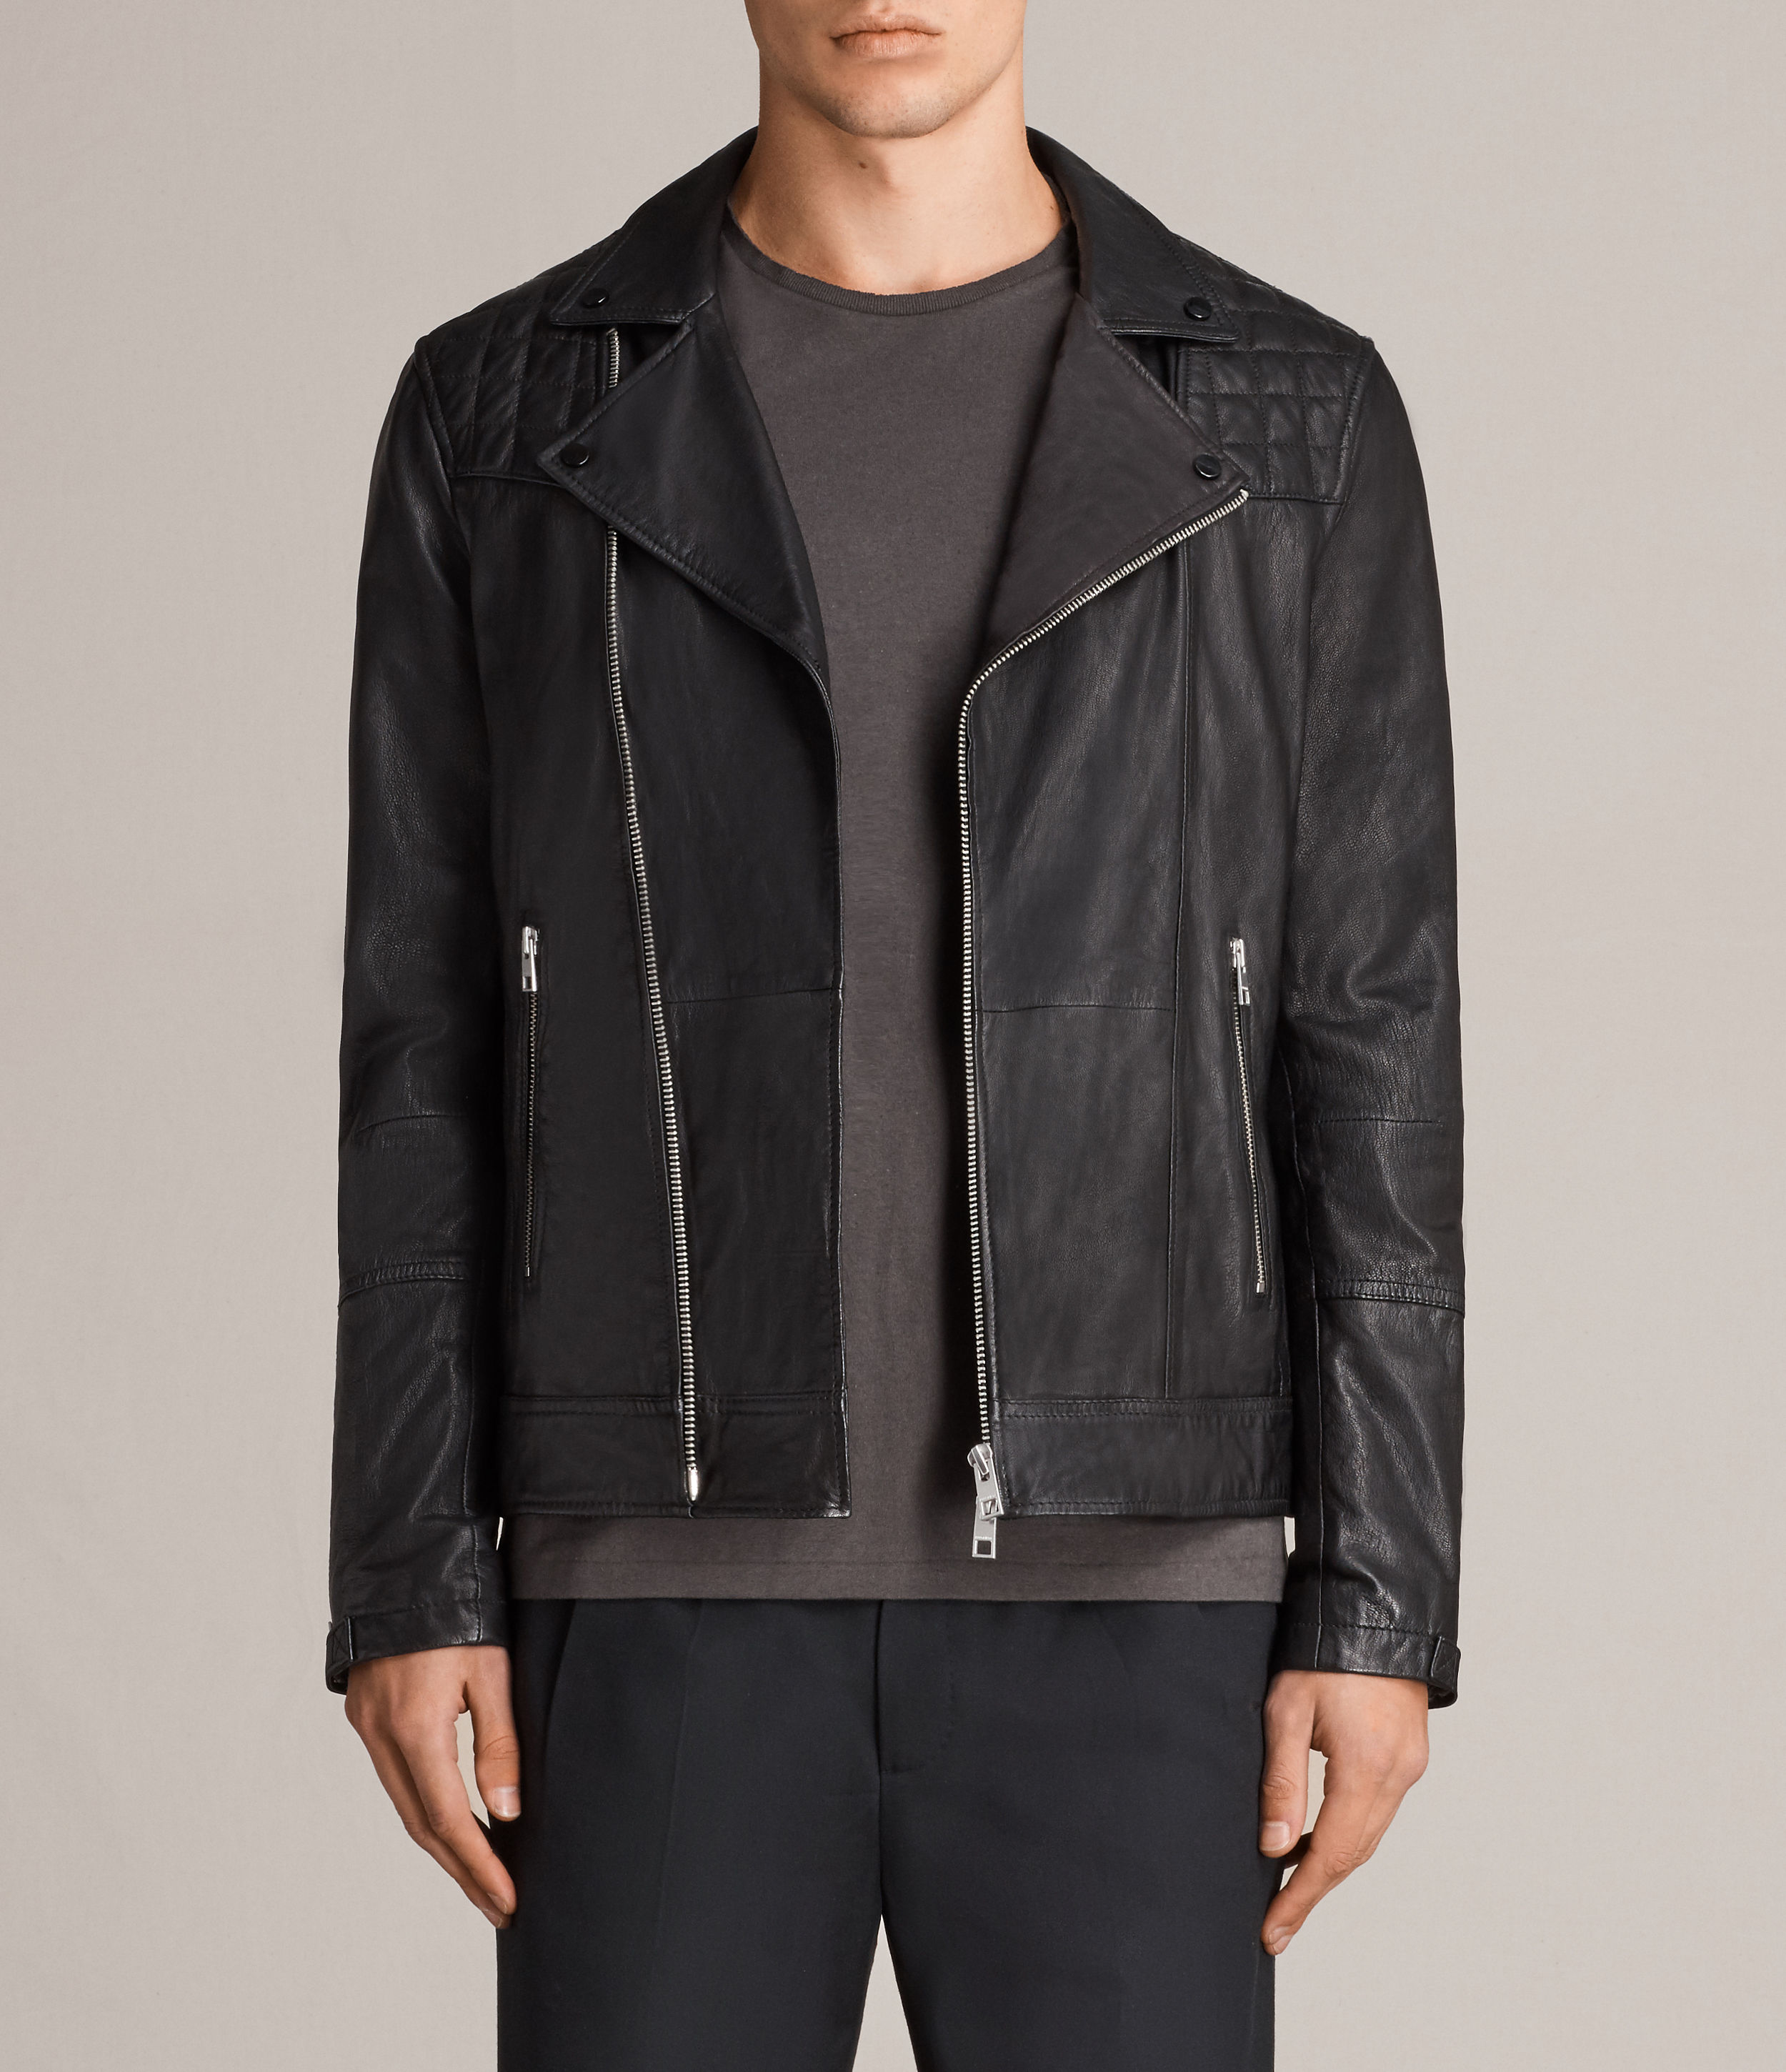 All Saints Kushiro Leather Biker Jacket (With images) | Leather jacket ...